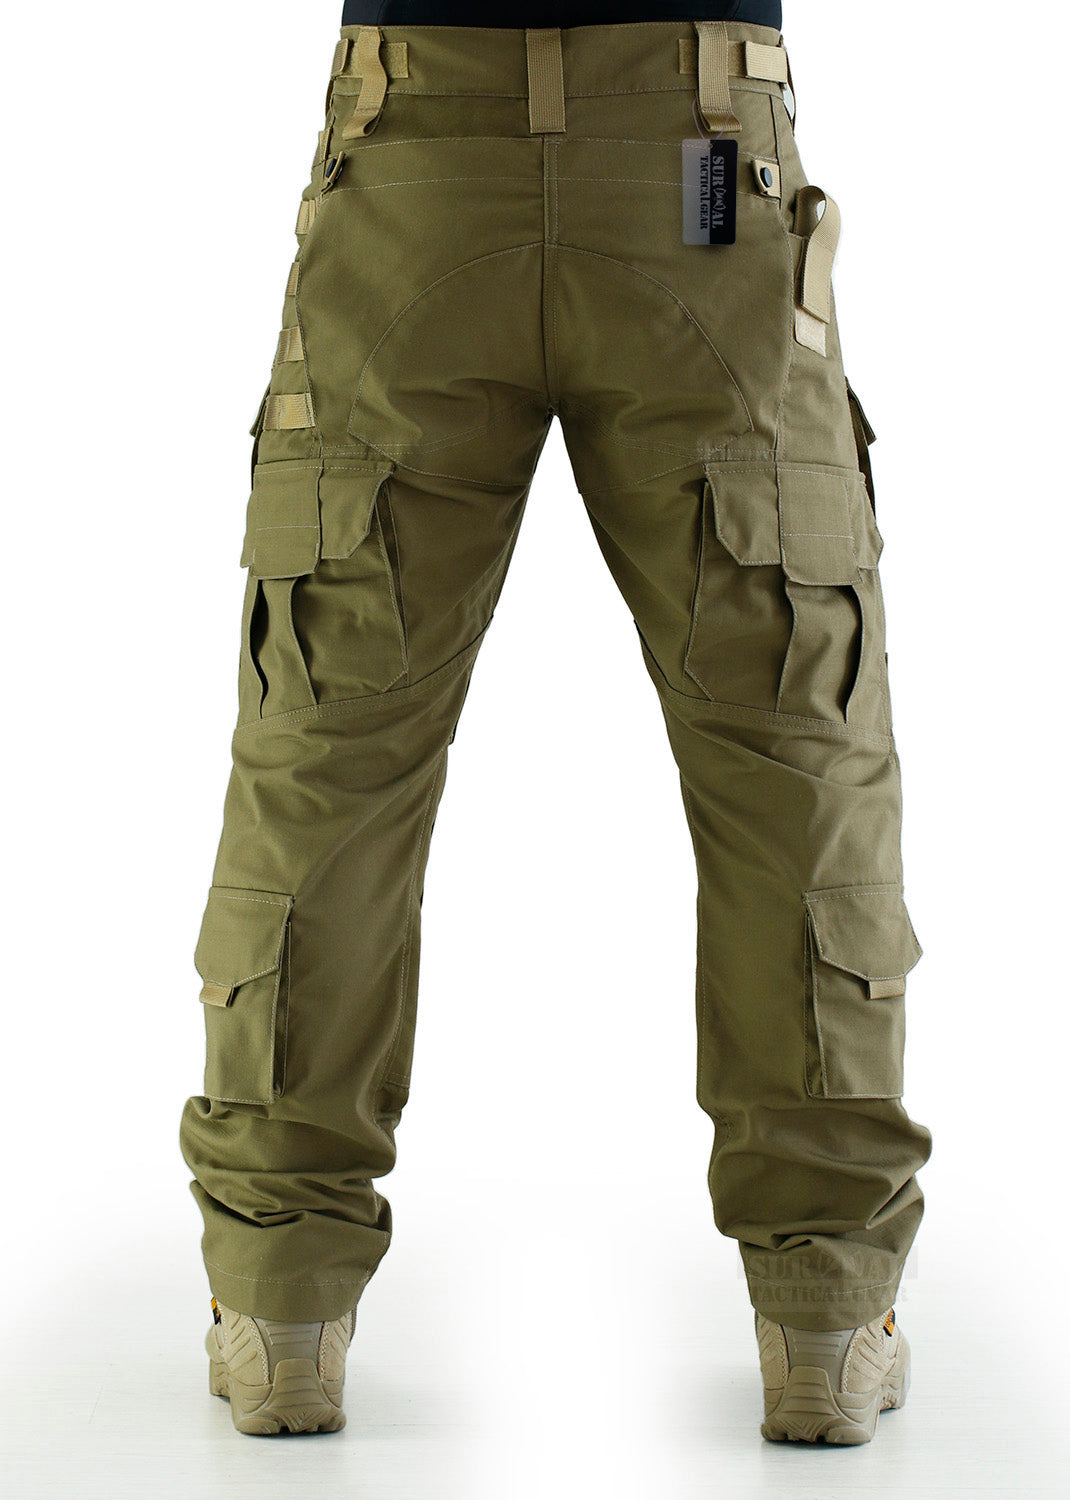 G3 Tactical Combat Pants Camo With Knee Pads | ANTARCTICA Outdoors